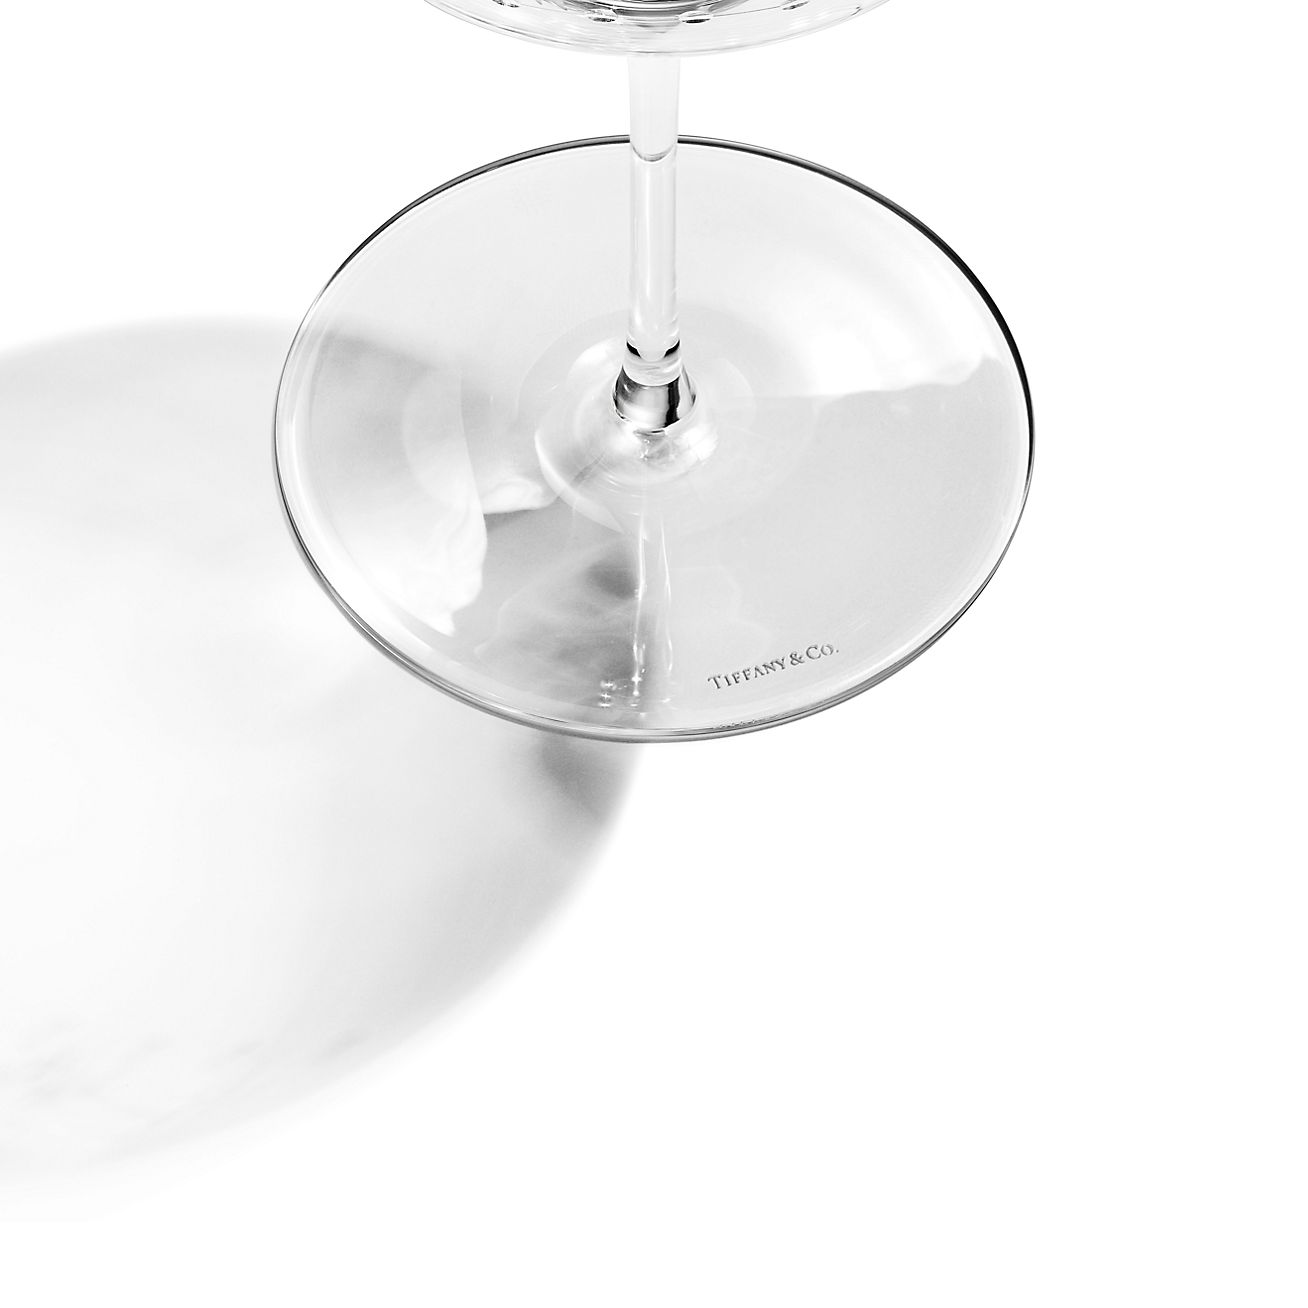 ティファニー オーデュボン レッド ワイングラス 手彫りガラス 